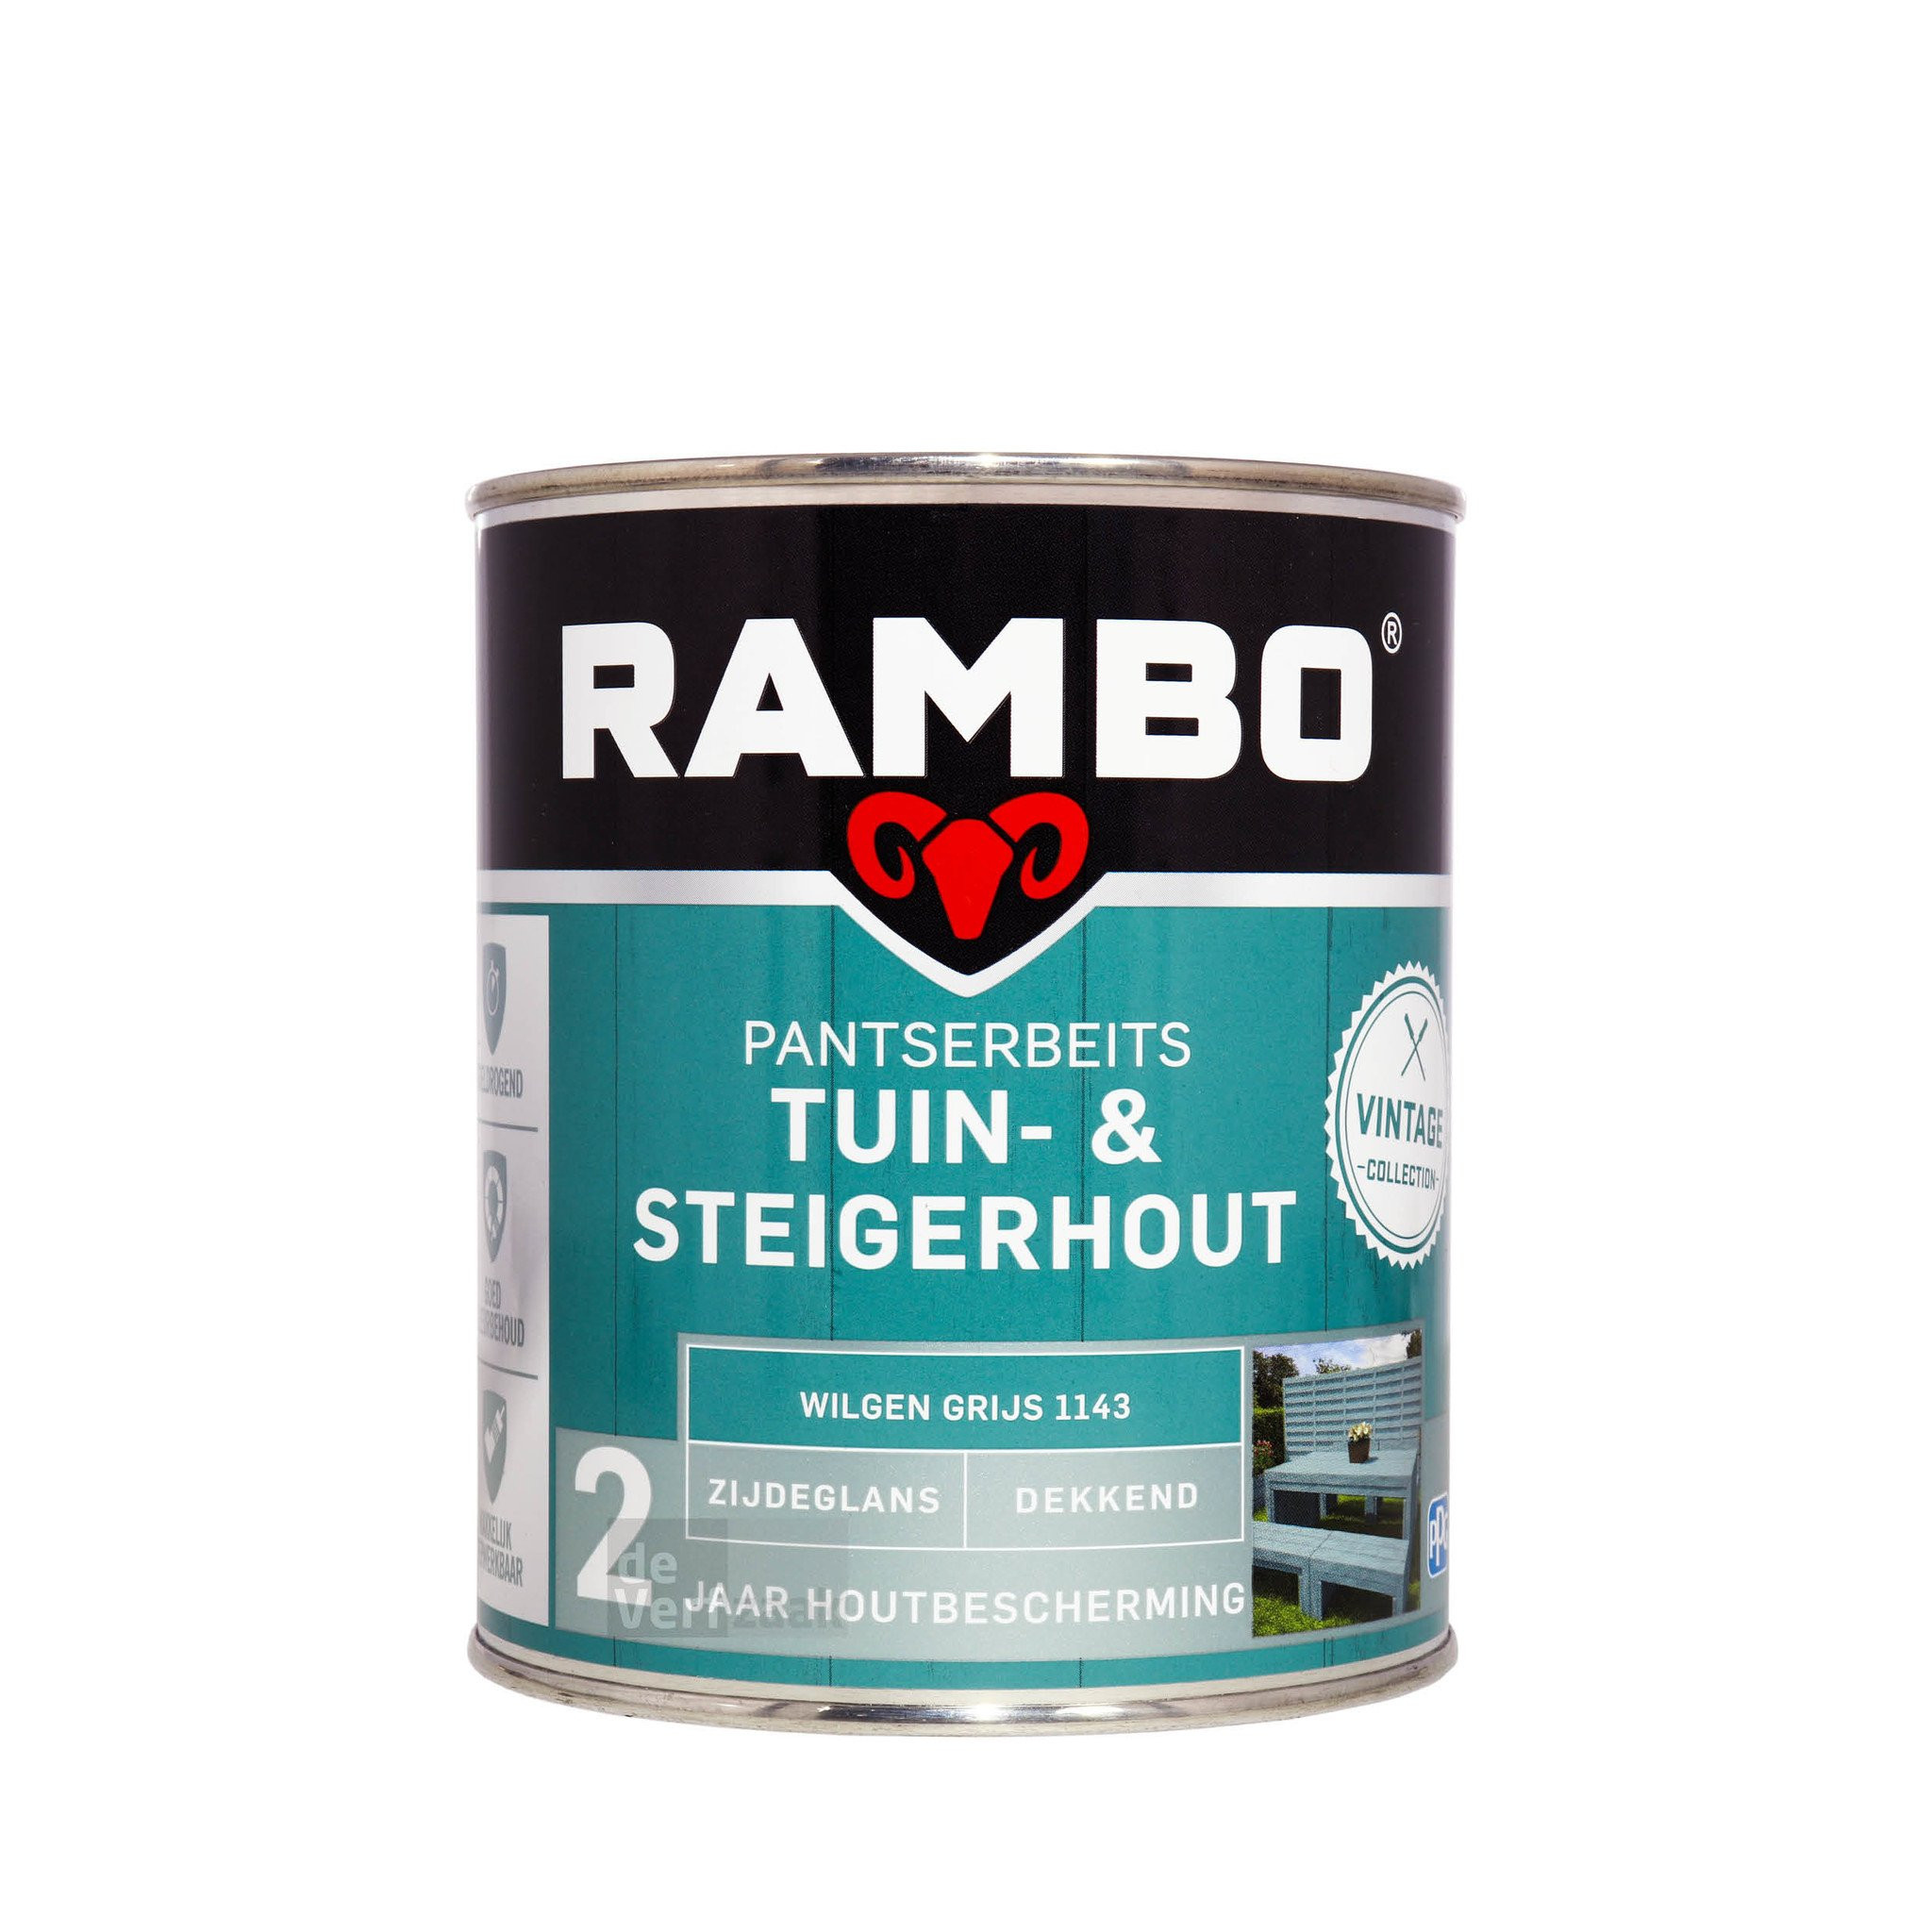 Rambo Tuin - & Steigerhout Wilgen Grijs 1143